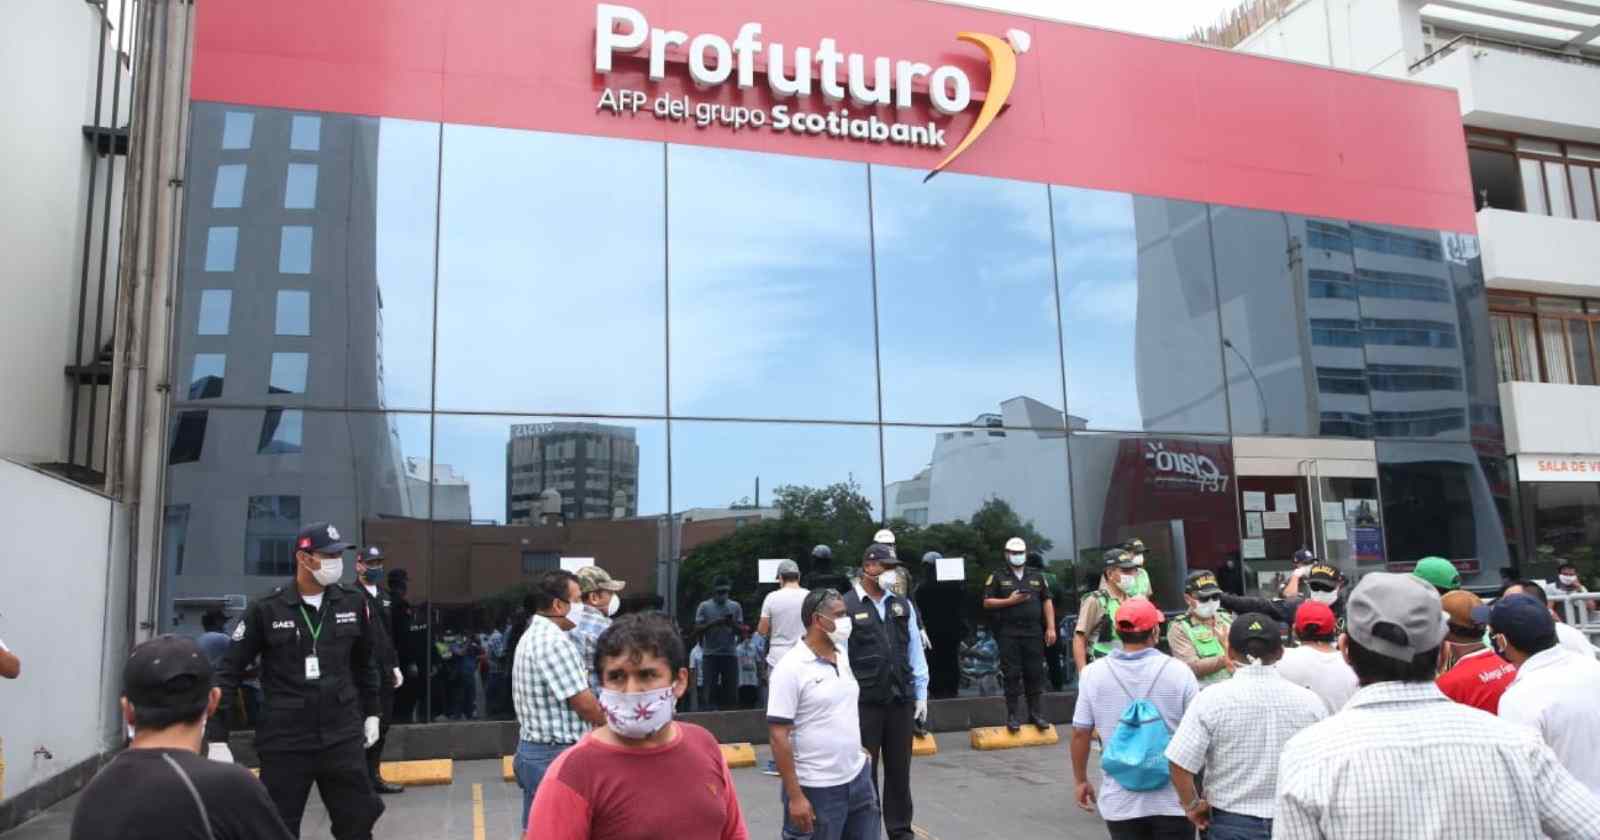 AFP Perú